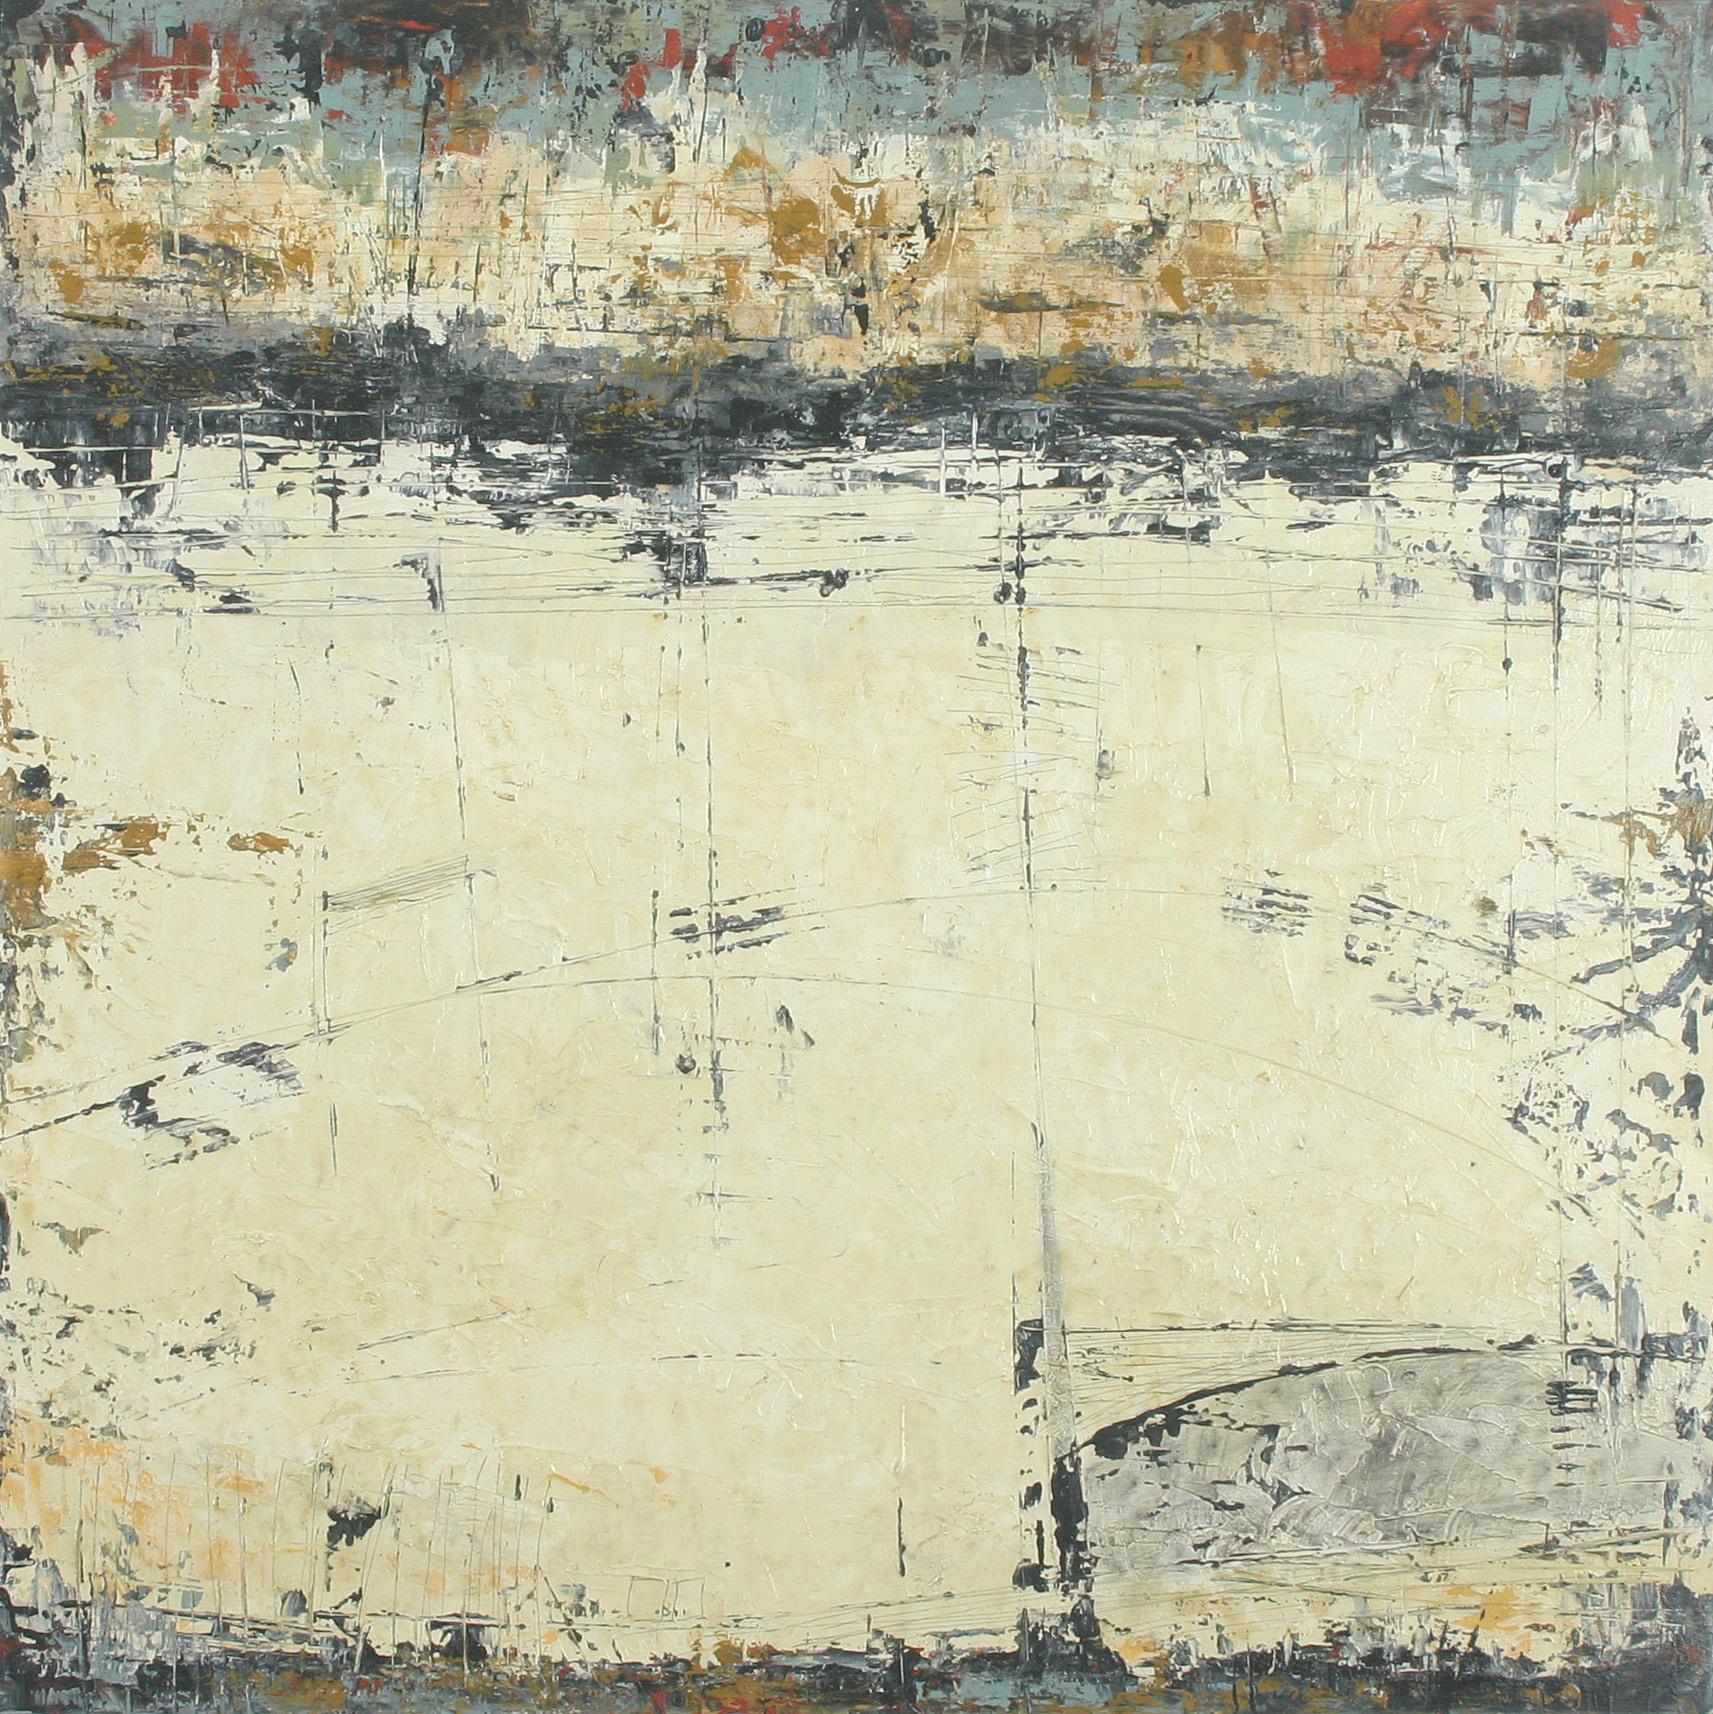 Abstract Painting Patricia Oblack - Des conclusions calculées, peinture abstraite